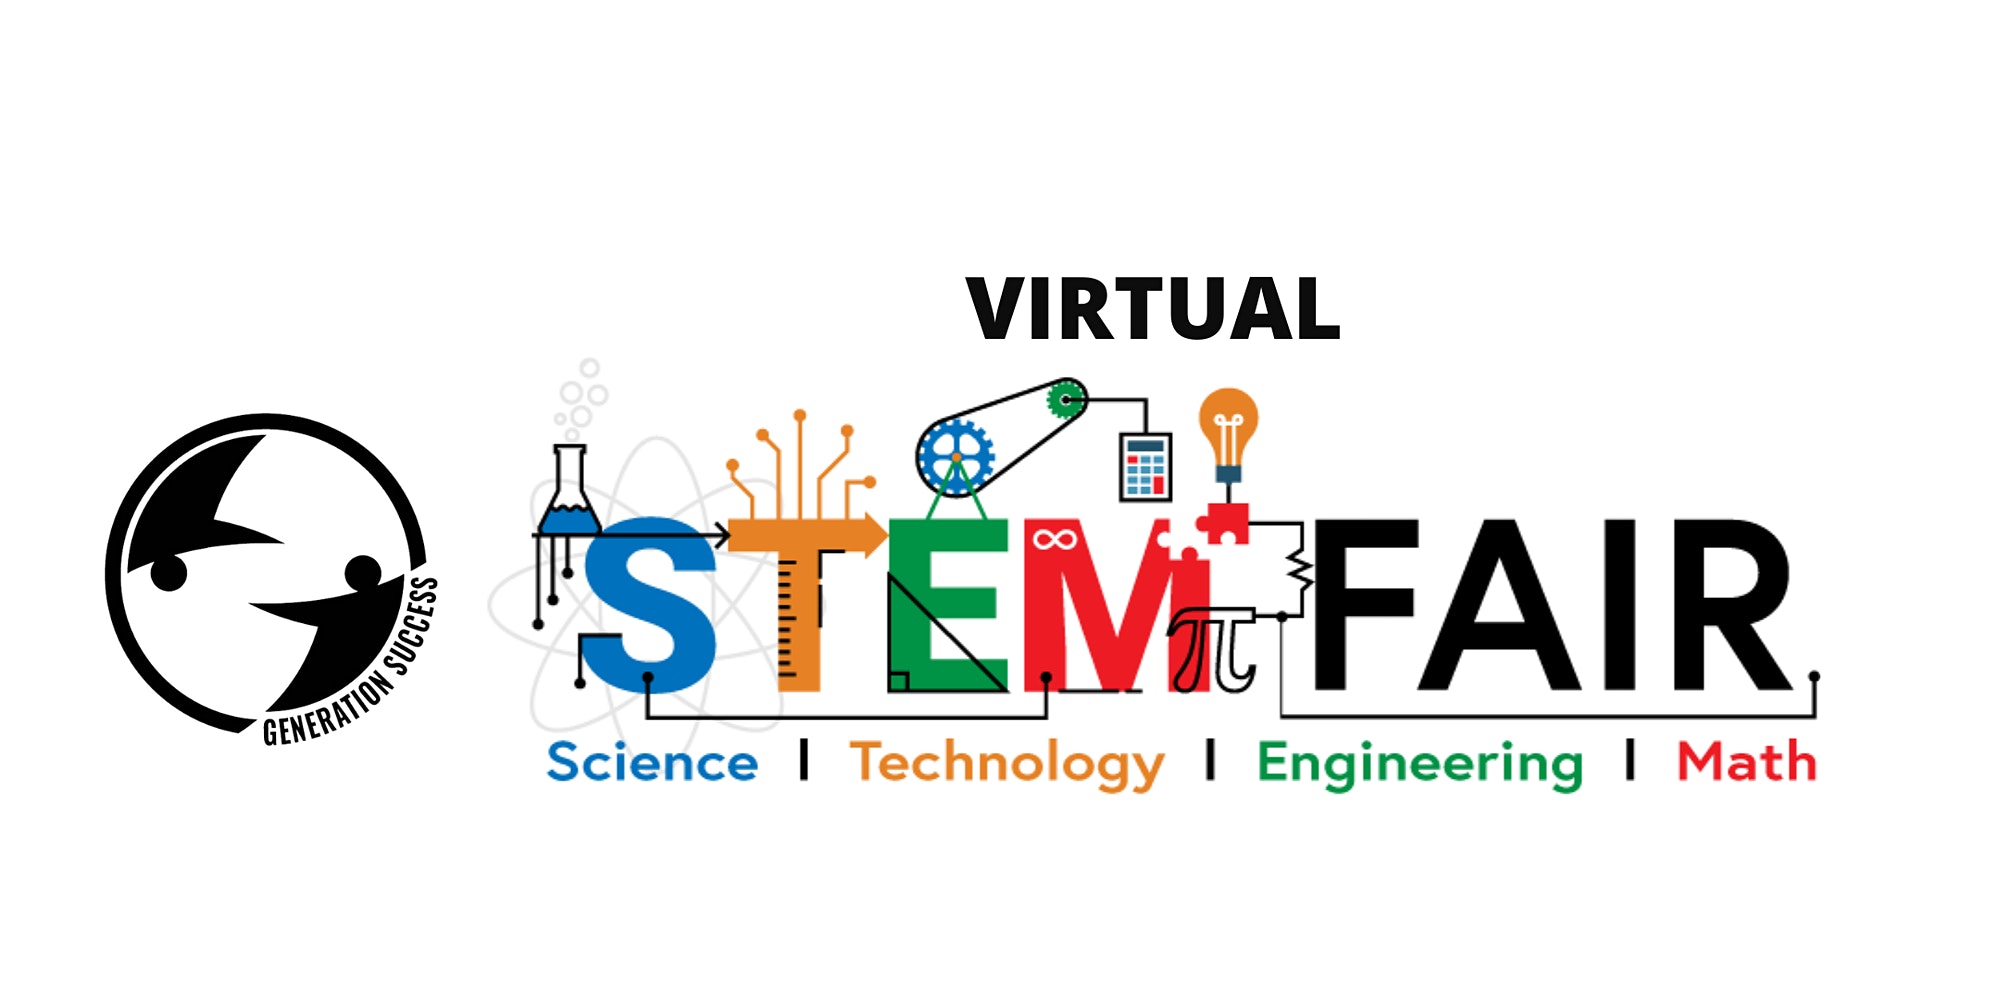 Virtual STEM Fair image